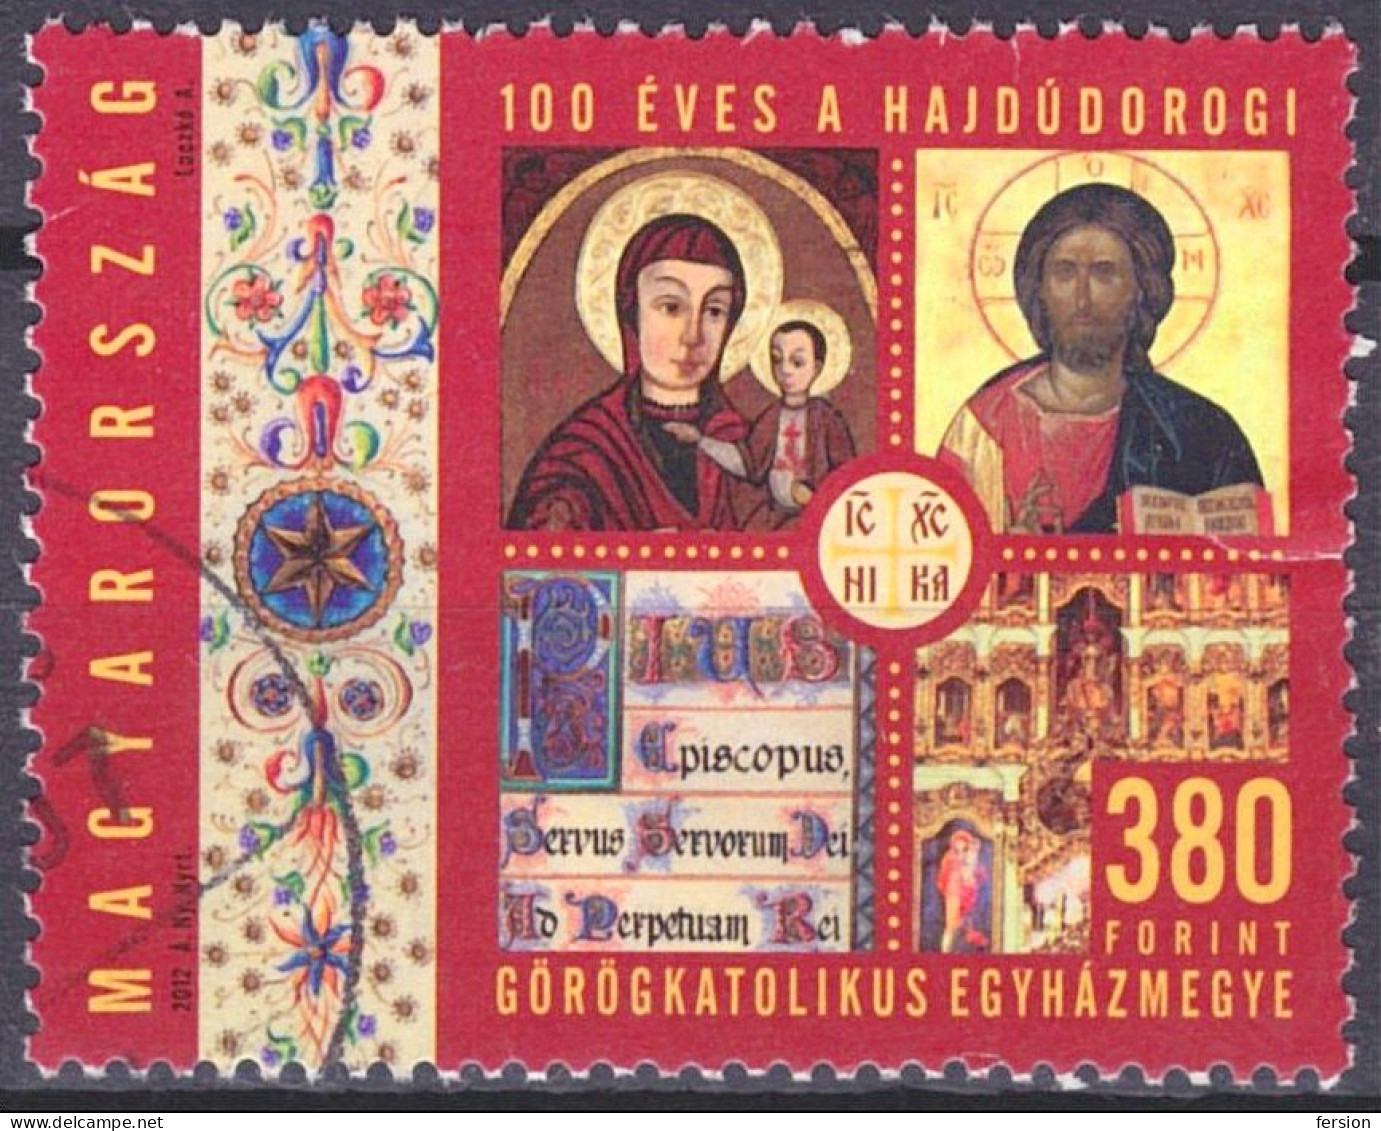 Orthodox Greek Catholic CHURCH Diocese In Hungary Hajdudorog / Icon Icons - Jesus - USED - Hungary 2012 - Religione